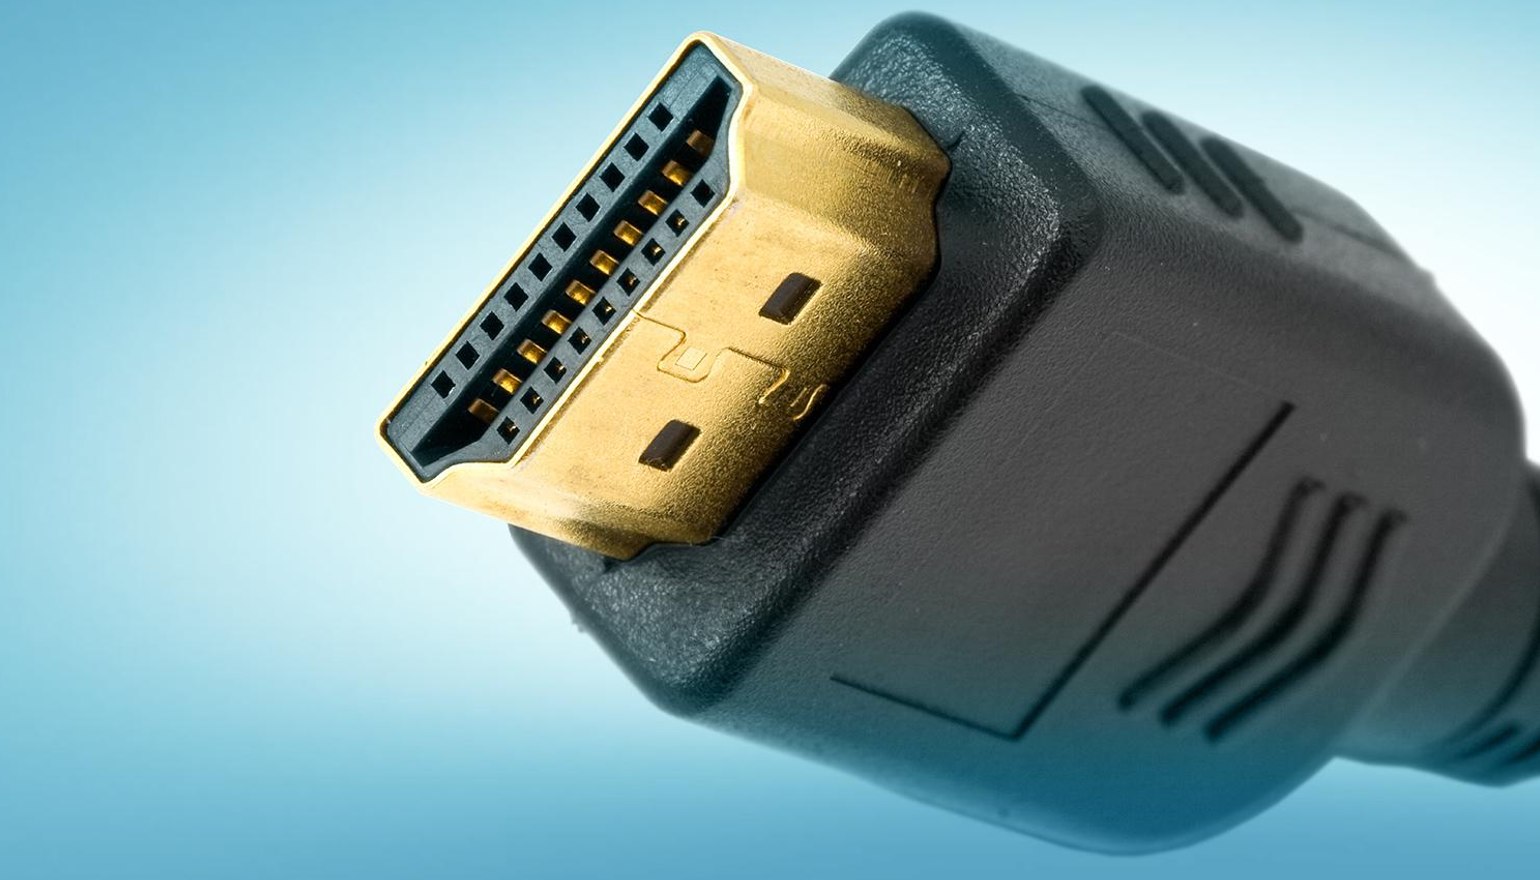 Knuppel ijs maximaliseren HDMI mythes en fabels: kan een HDMI-kabel het beeld veranderen? | FWD